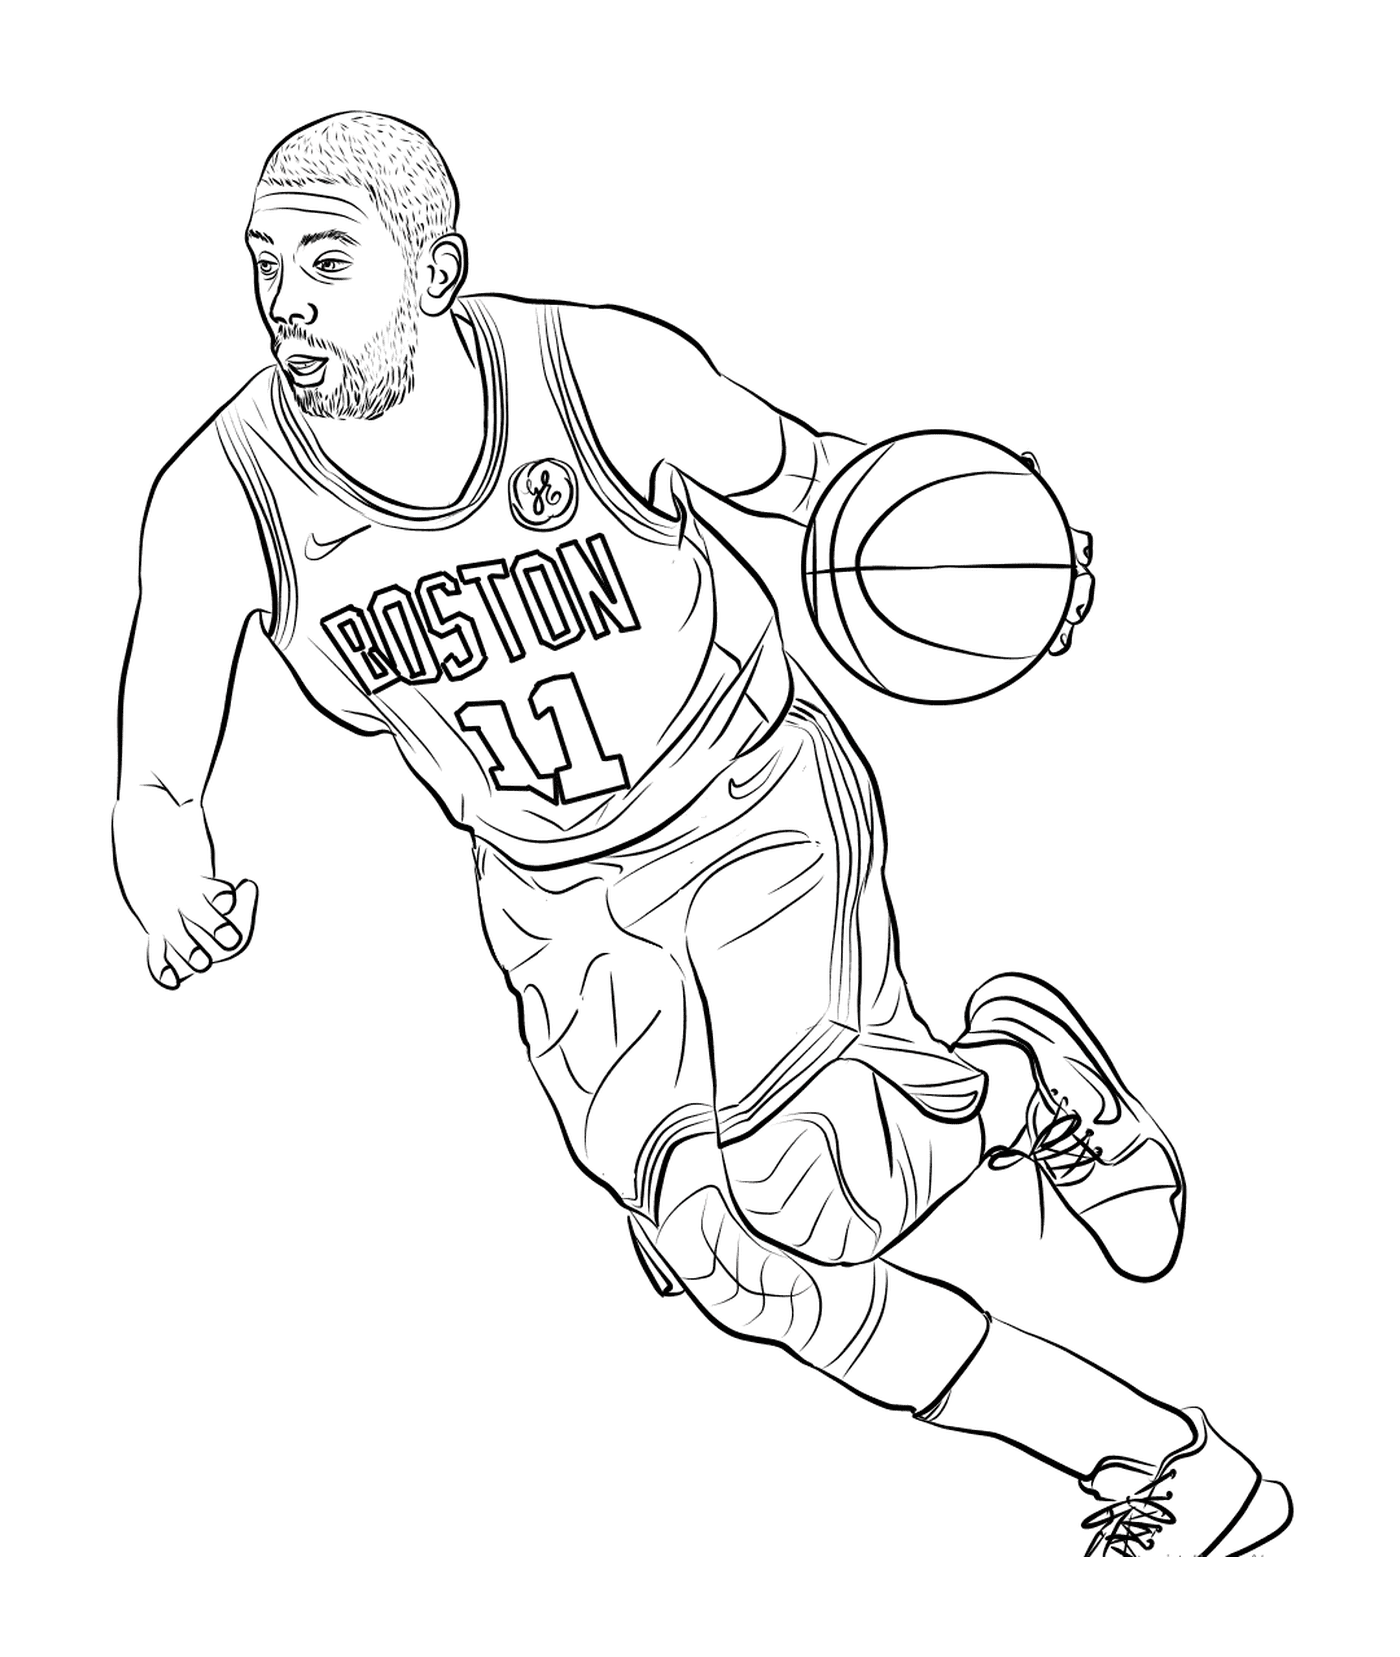  Kyrie Irving joga basquete 